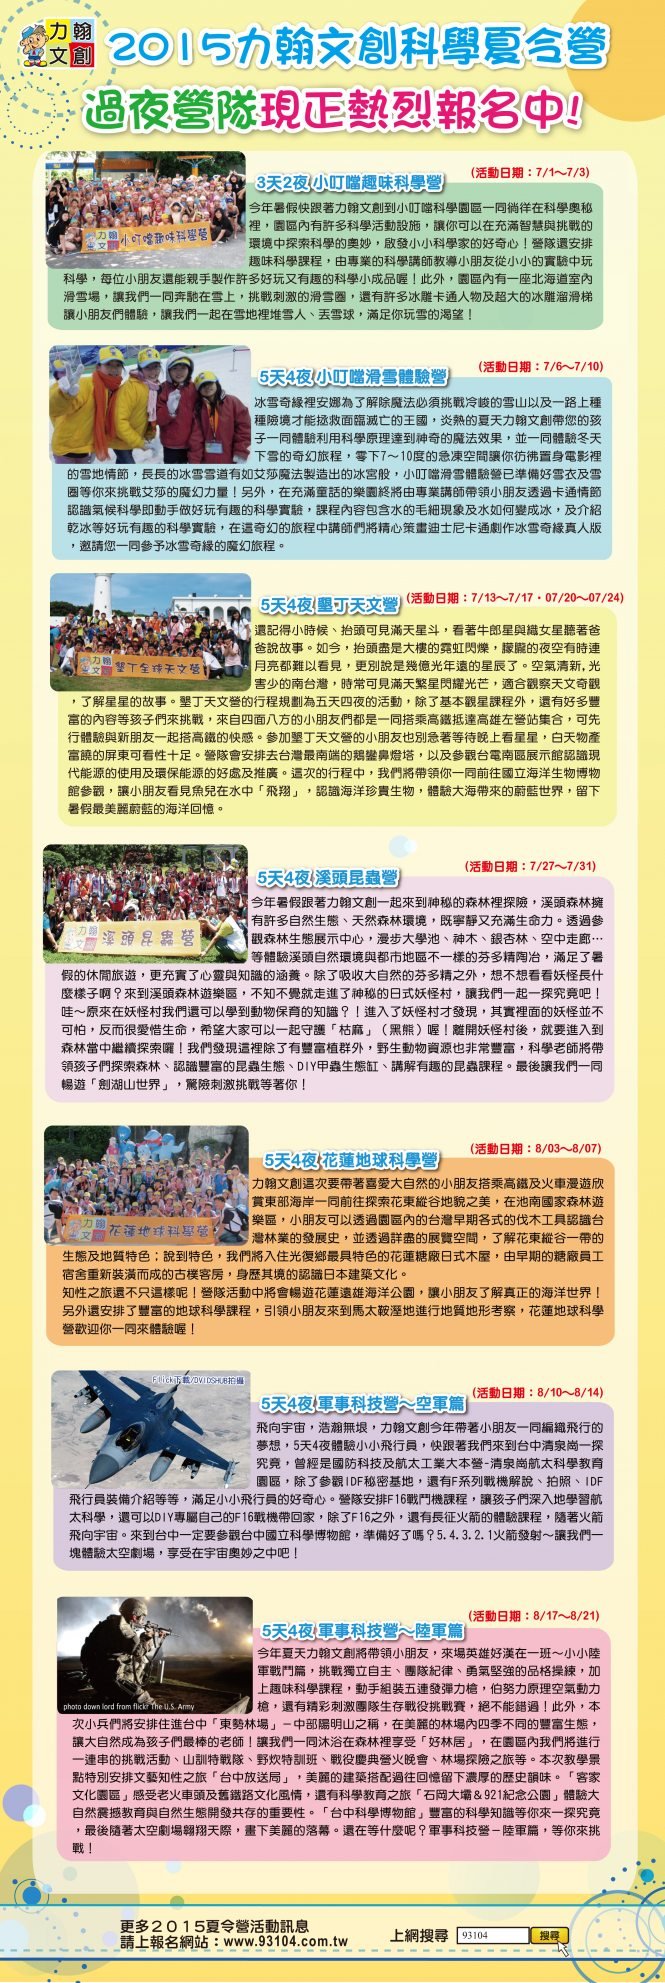 2015遊學台灣夏令營